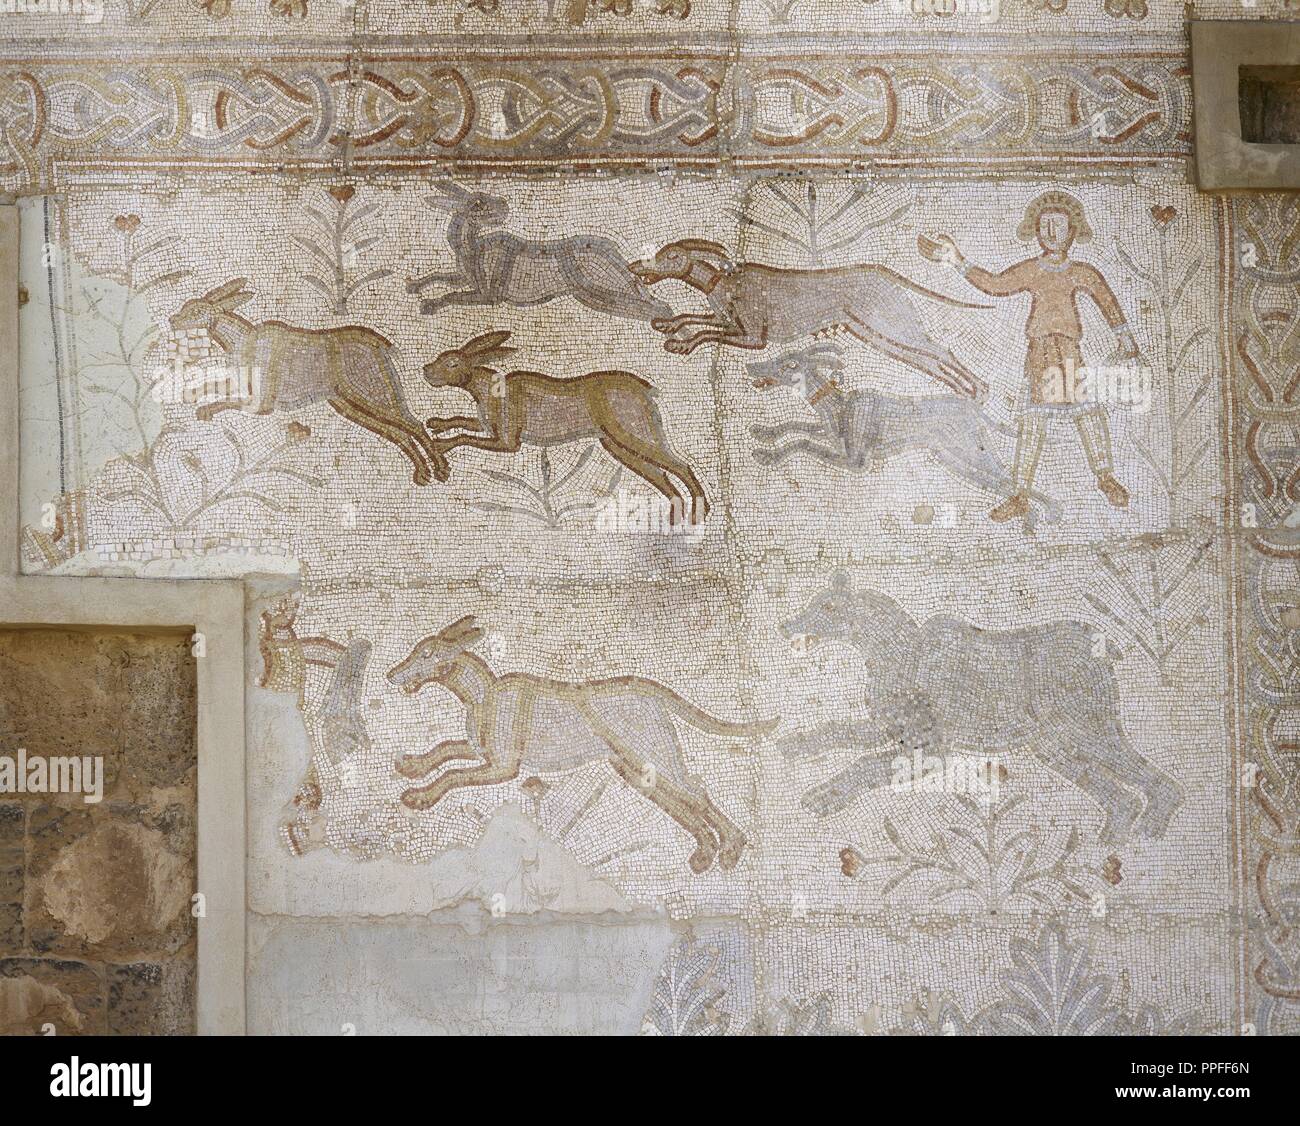 La Syrie. Bosra (Busra al-sham). District de Deraa. Mosaïque romaine, 6e siècle, découvert dans le théâtre. Scène de chasse chiens de chasse (lièvre). Banque D'Images